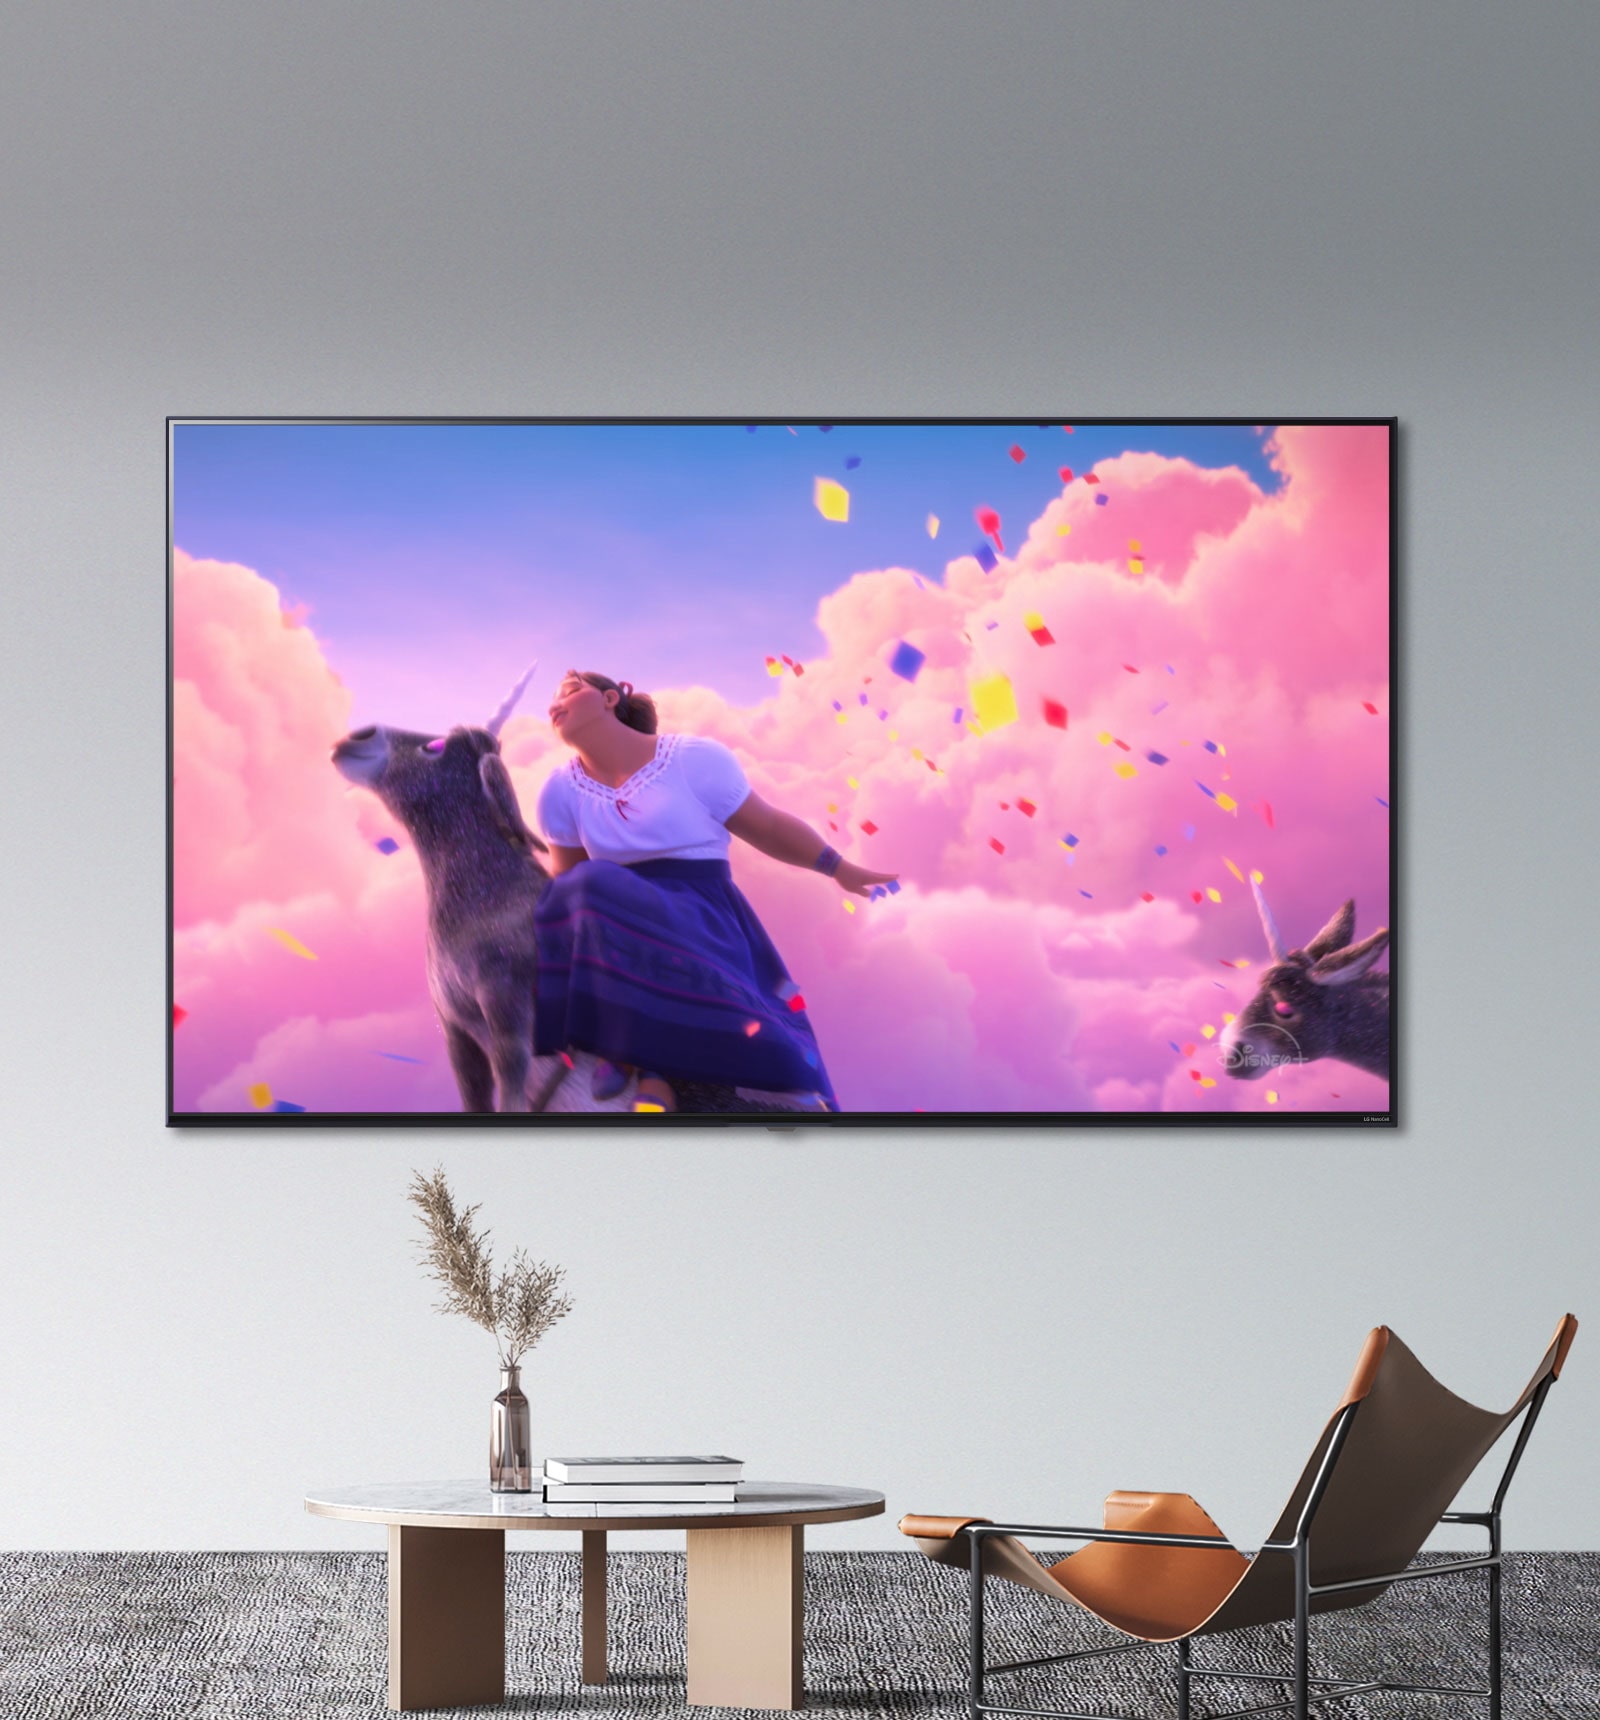 Scene iz Disneyjeva animiranog filma „Encanto” prikazuju svijetle, žive boje na televizoru LG NanoCell.